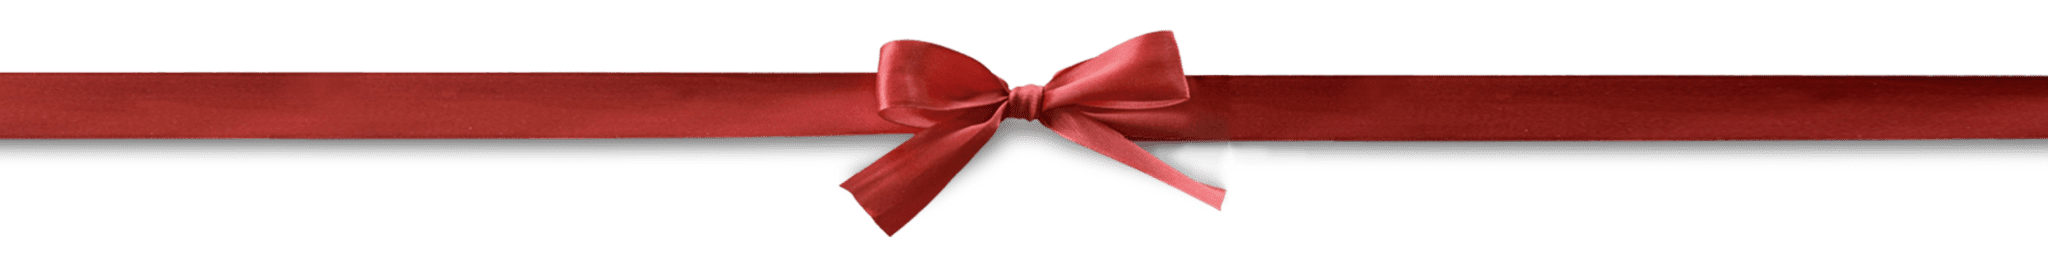 holiday-ribbon